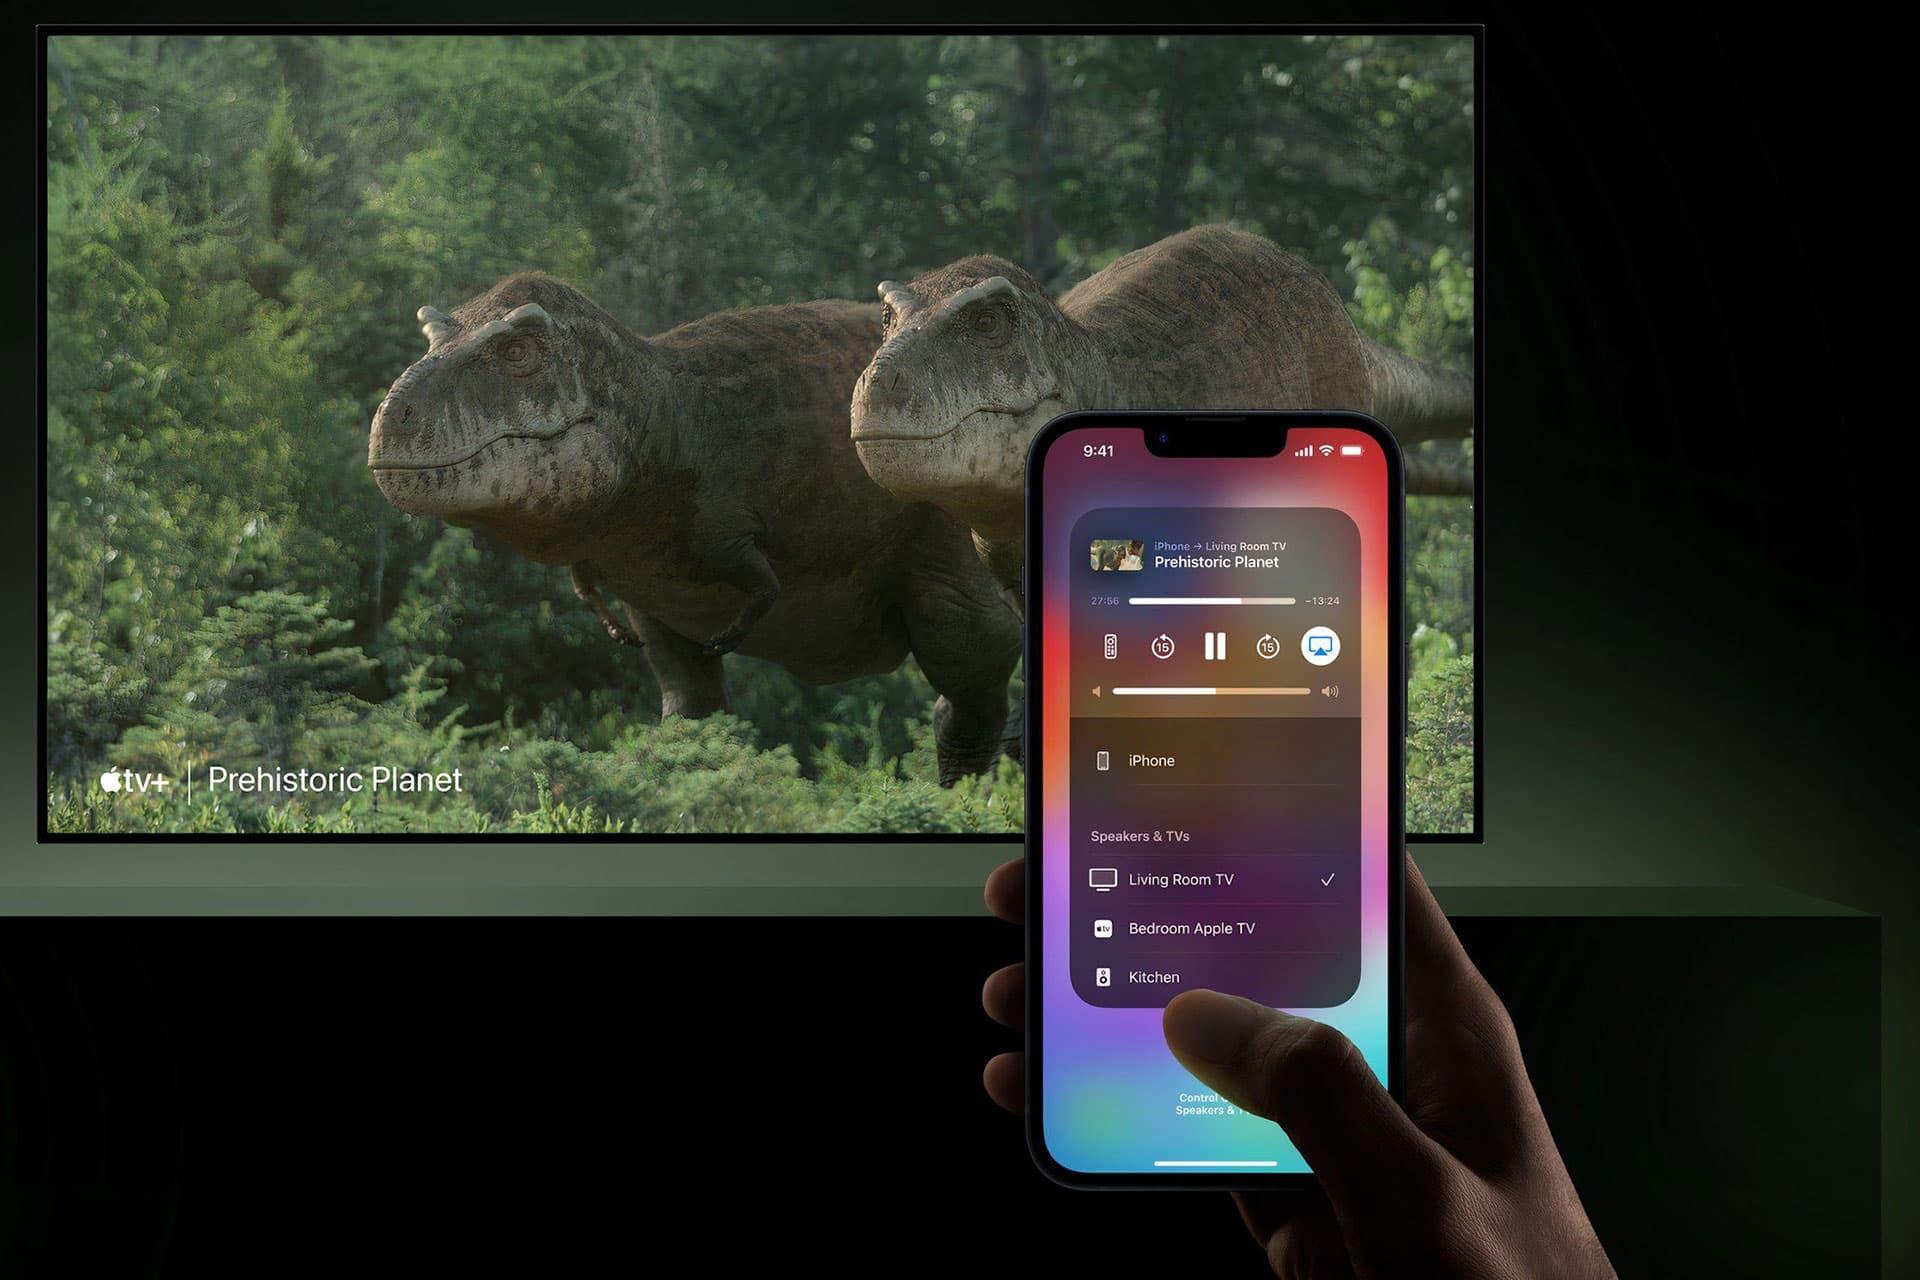 نمایش دو دایناسور در تلویزیون با منوی AirPlay آیفون